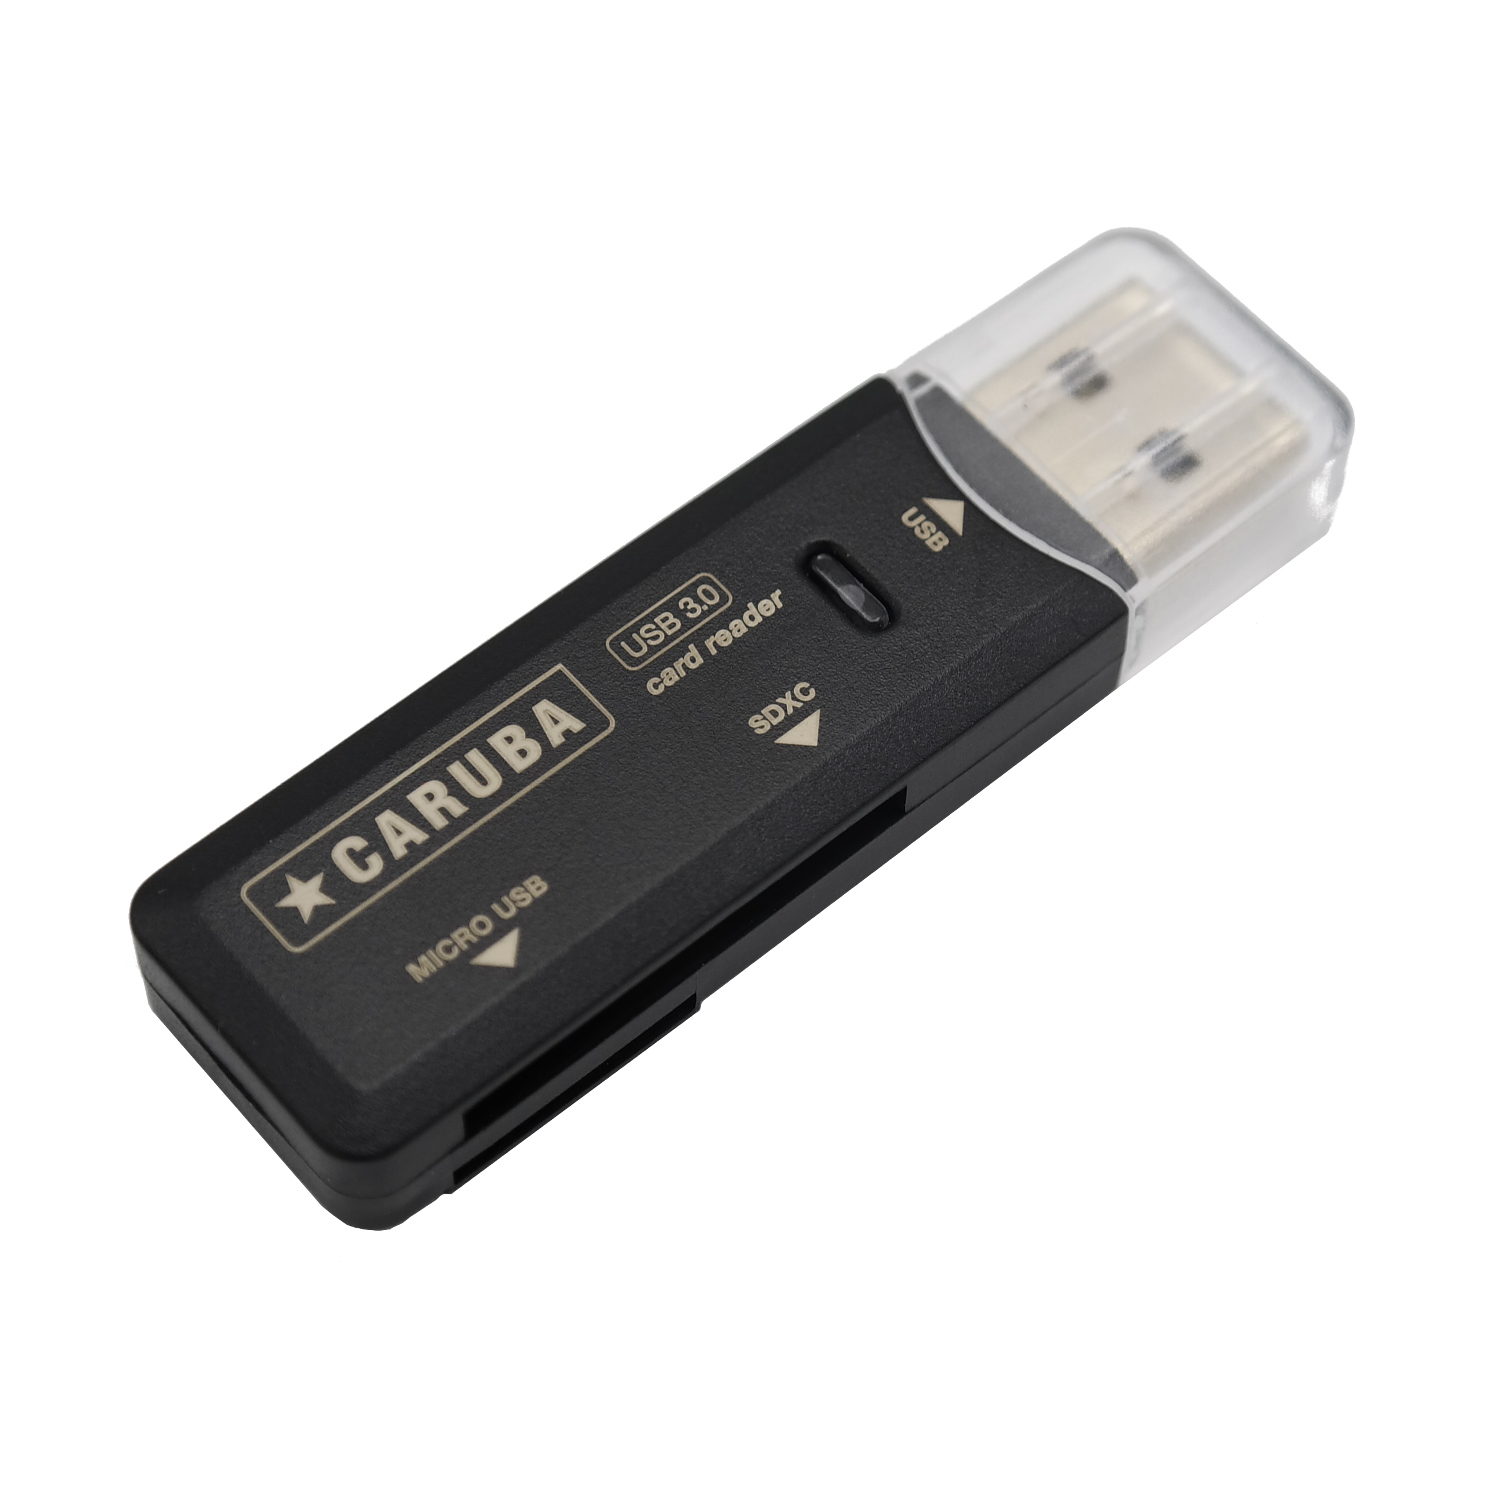 Caruba SD és micro SD memóriakártya olvasó USB 3.0 csatlakozással (UR-3)